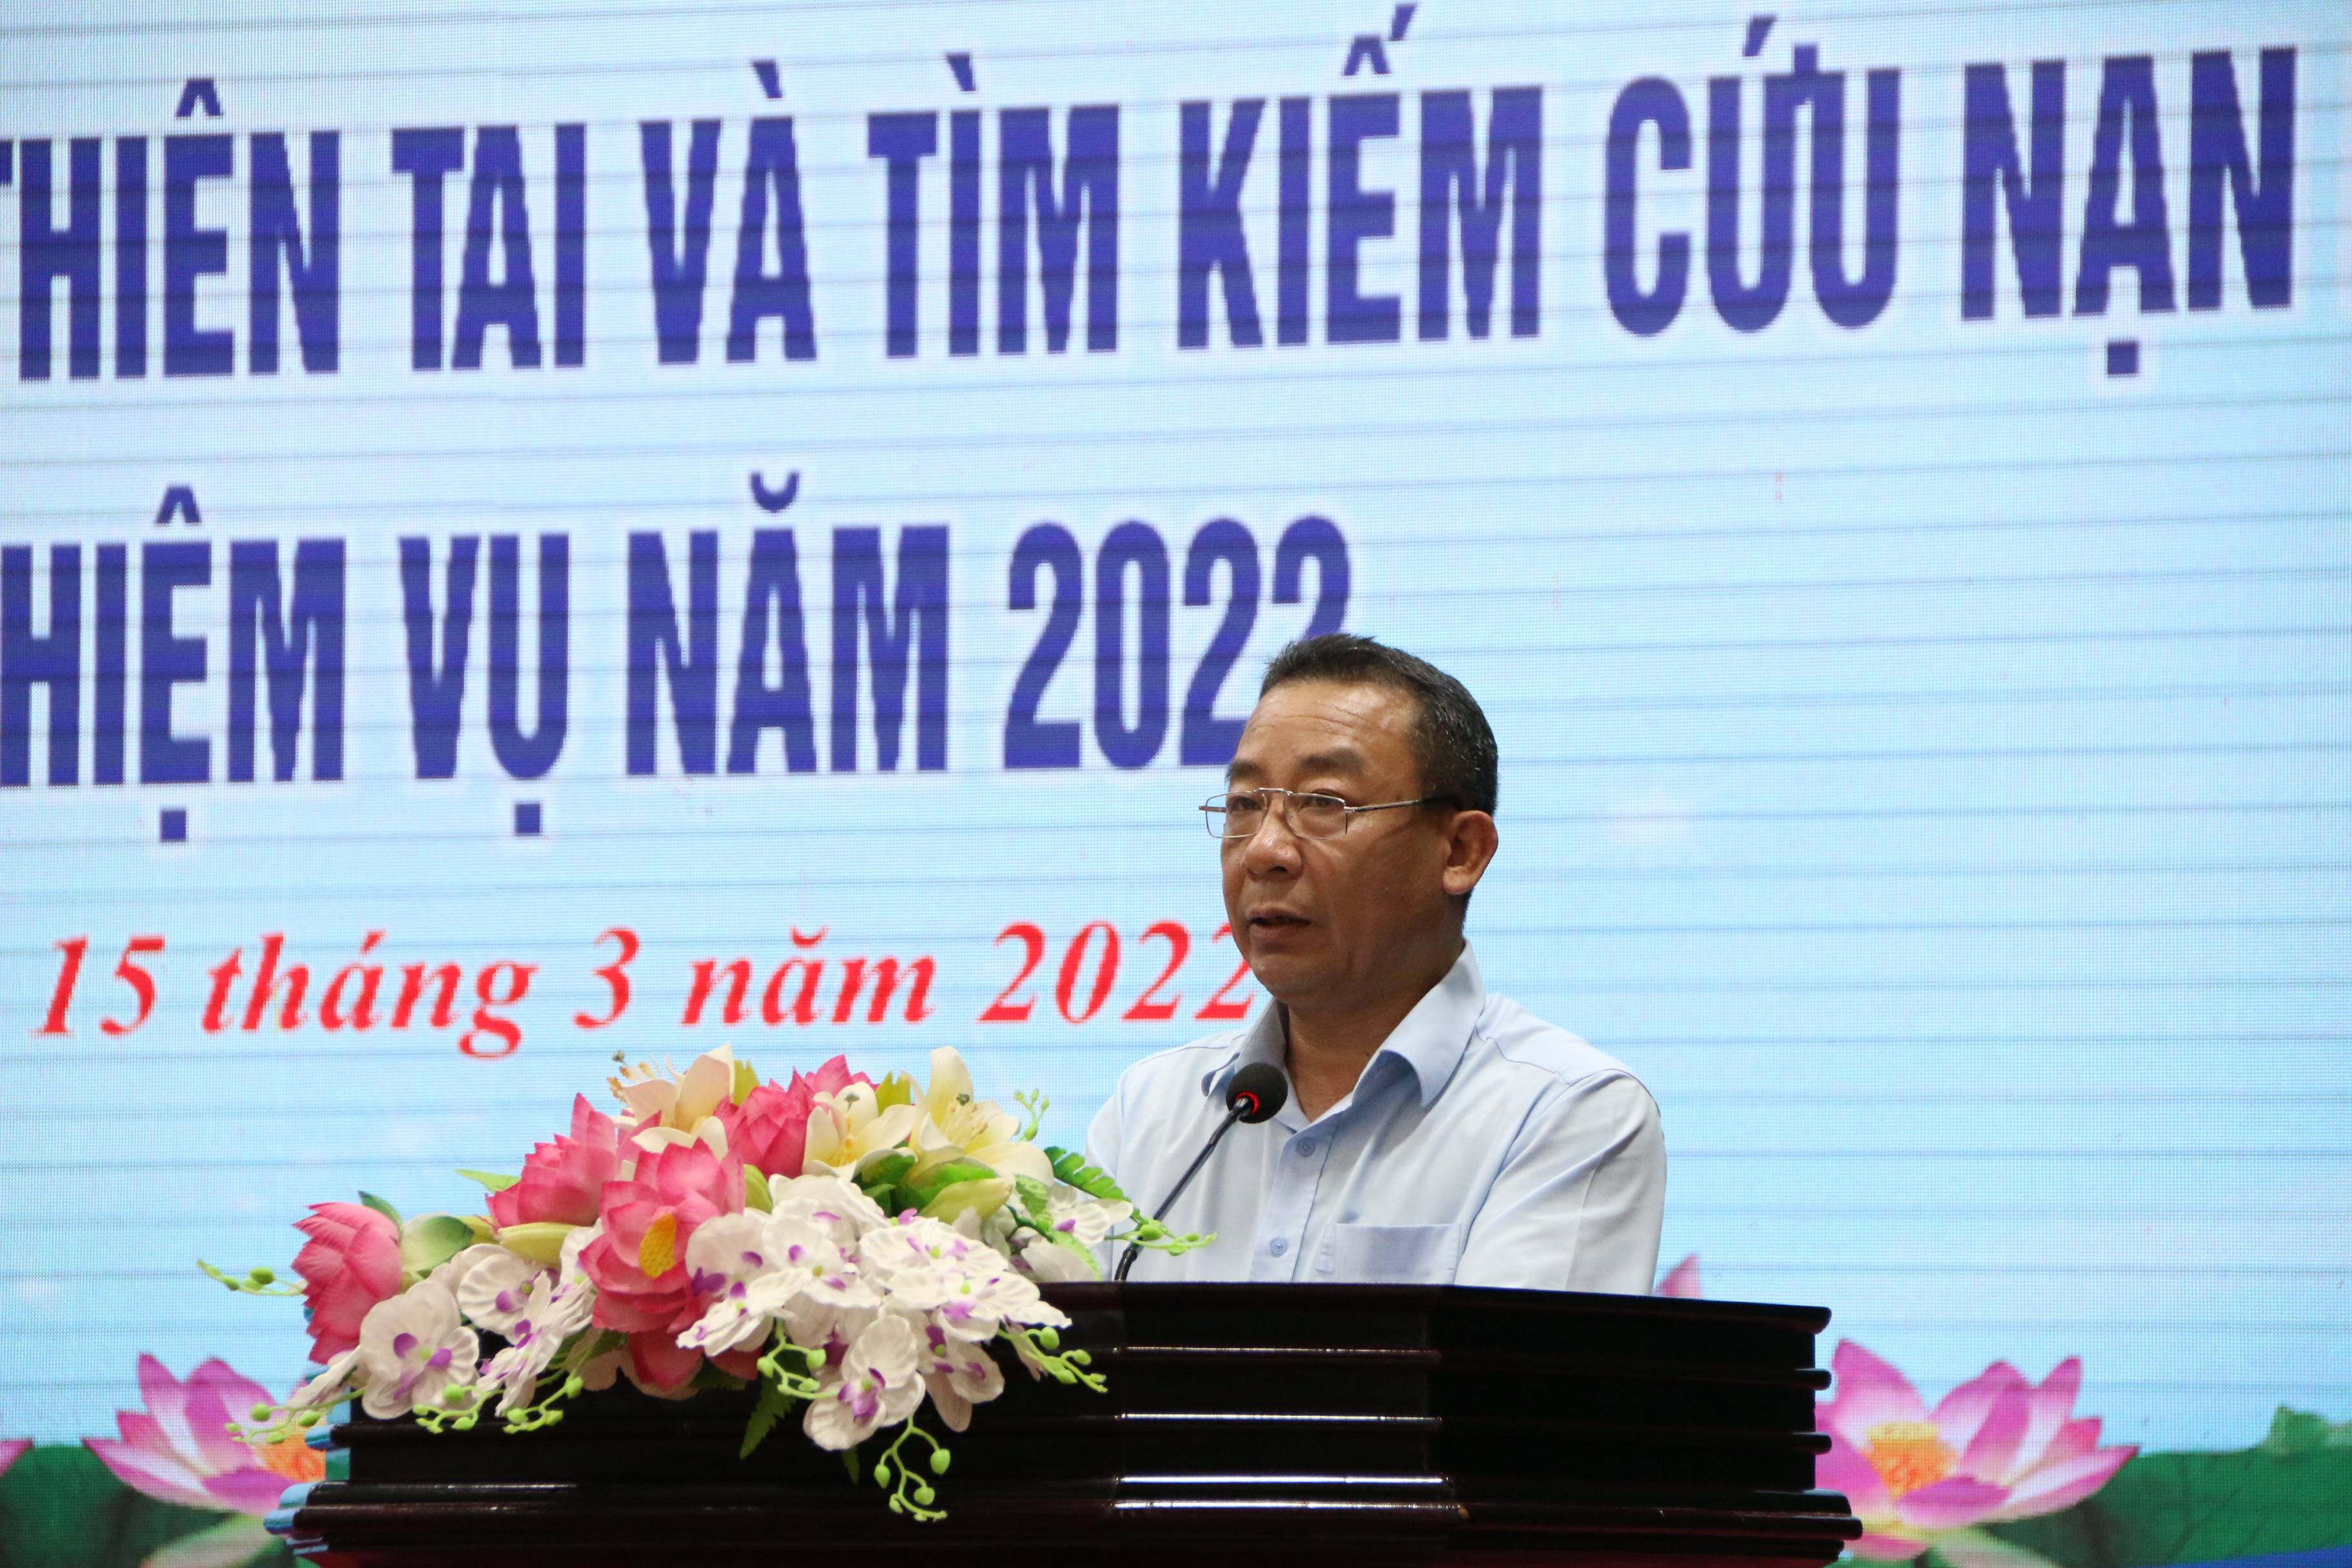 Đồng chí Nguyễn Văn Đệ - Giám đốc Sở NN&PTNN báo cáo tình hình thiên tai và công tác tìm kiếm cứu nạn trên địa bàn tỉnh trong năm 2021. Ảnh: Tiến Đông 